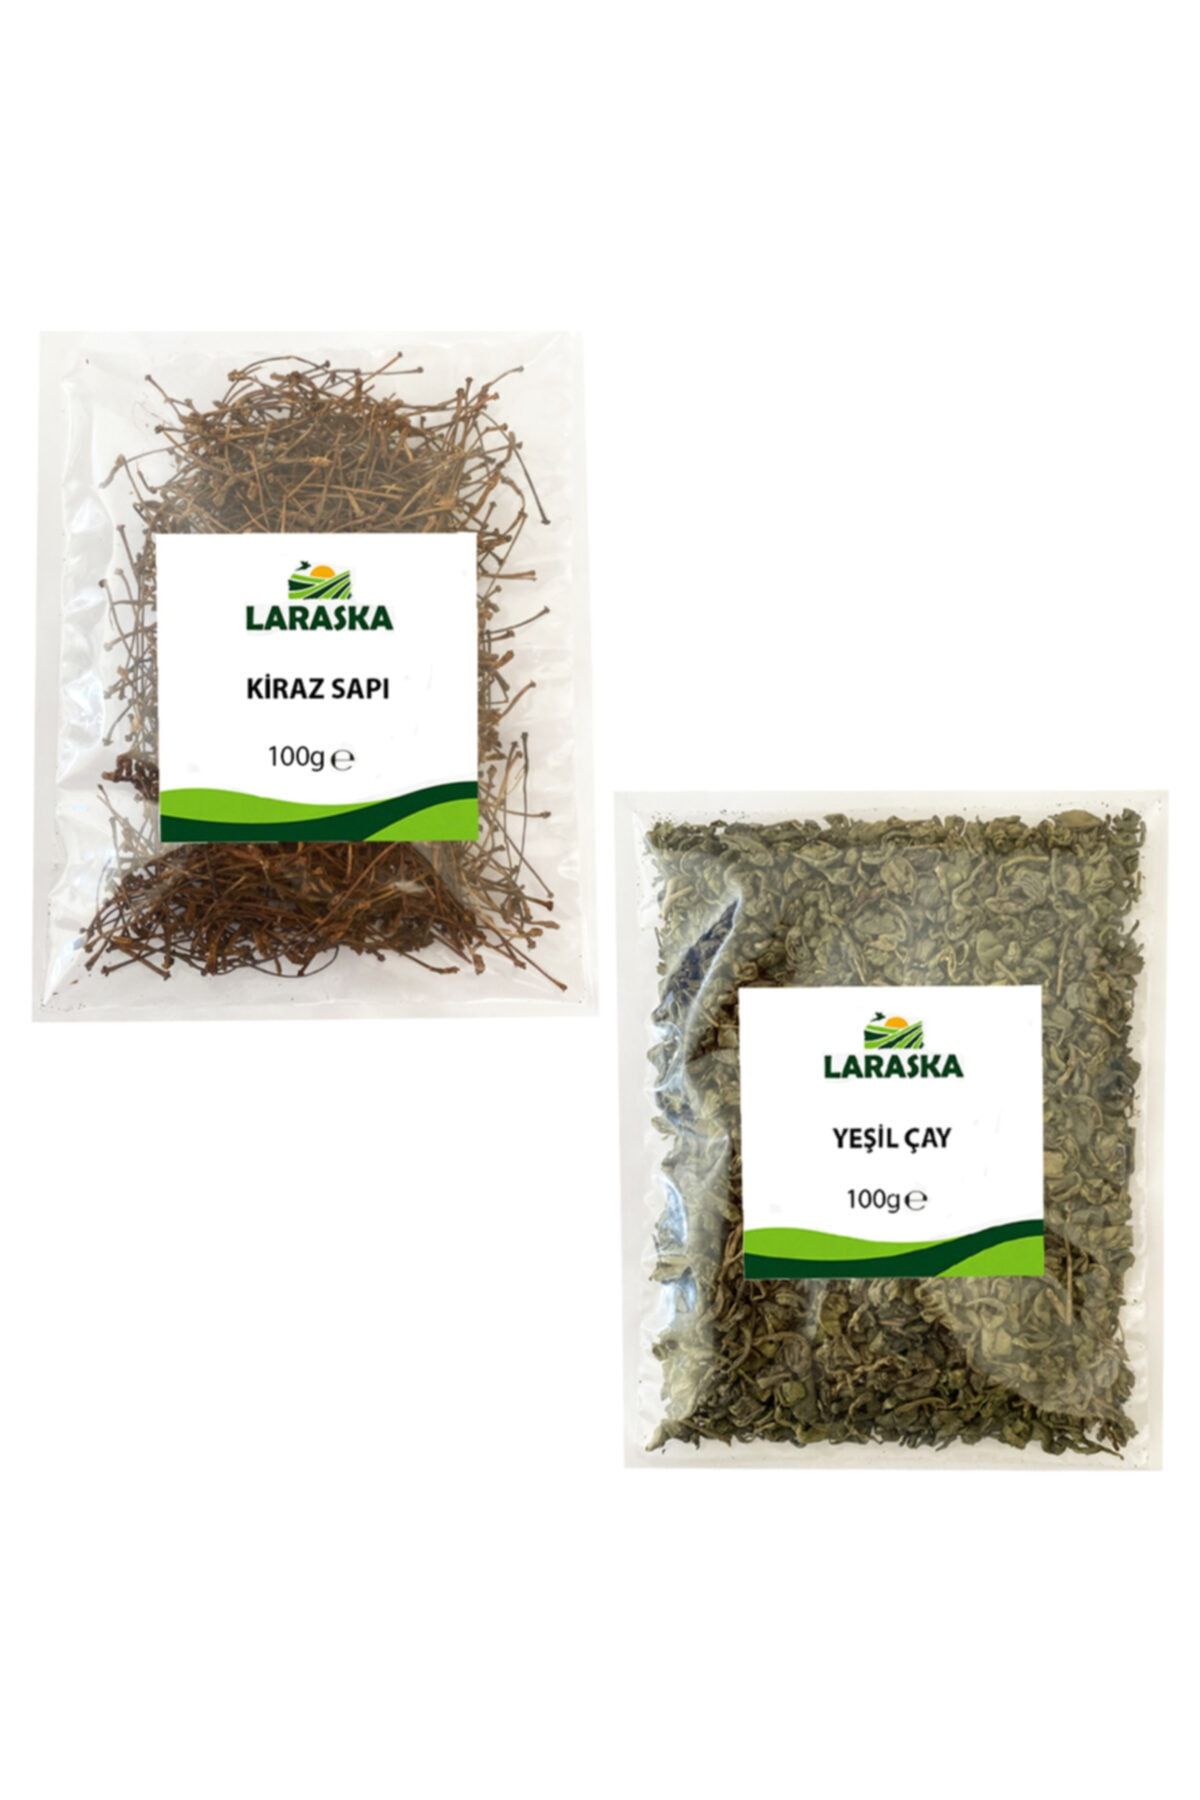 Laraska Yeşil Çay Ve Kiraz Sapı 200g - Kış Çayı Paketi 200g